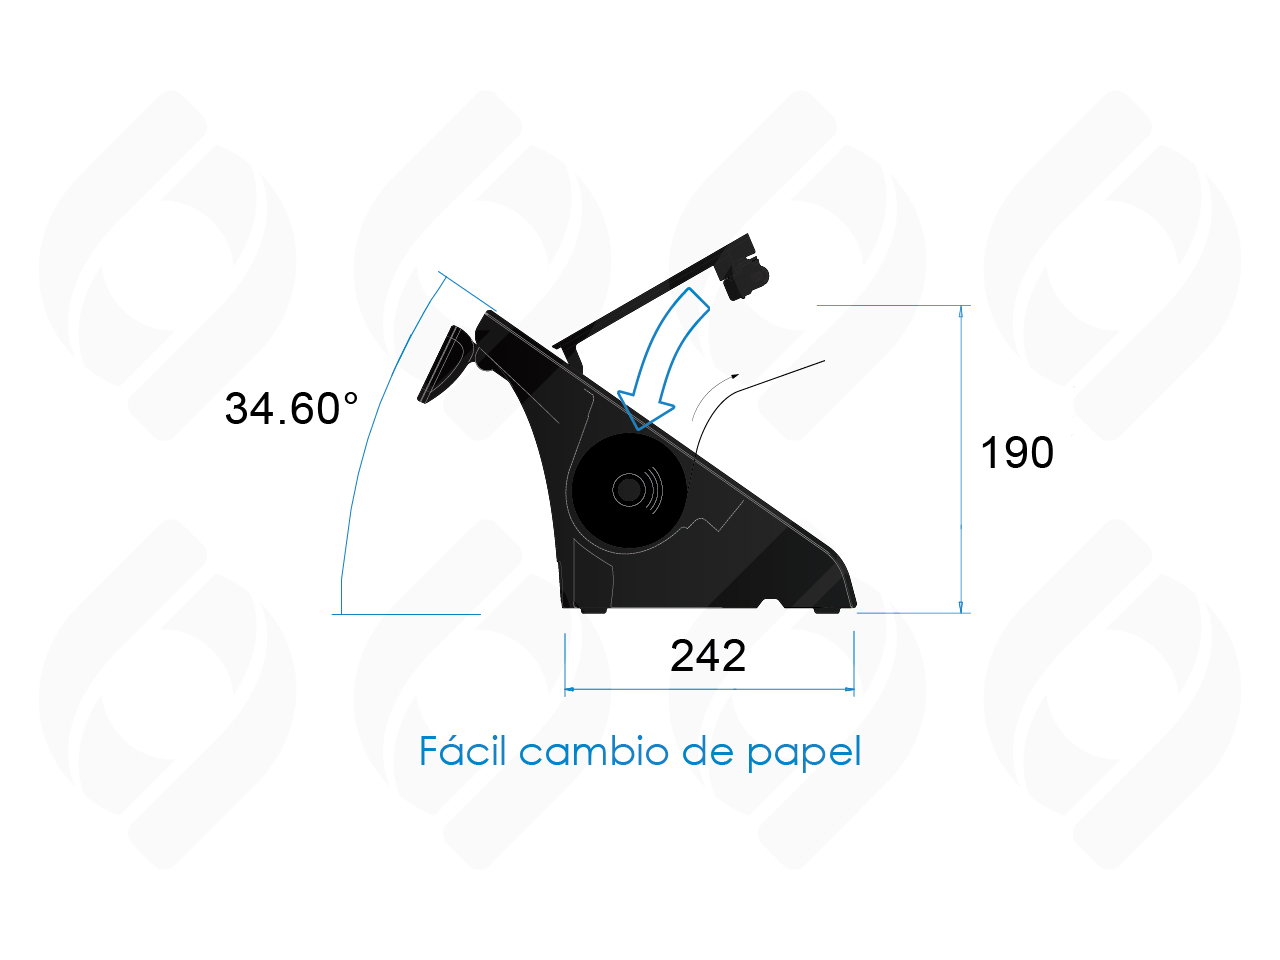 Kit POS Punto de Venta para recarga de tarjetas de proximidad, diseño compacto adaptable a casi cualquier especio de trabajo